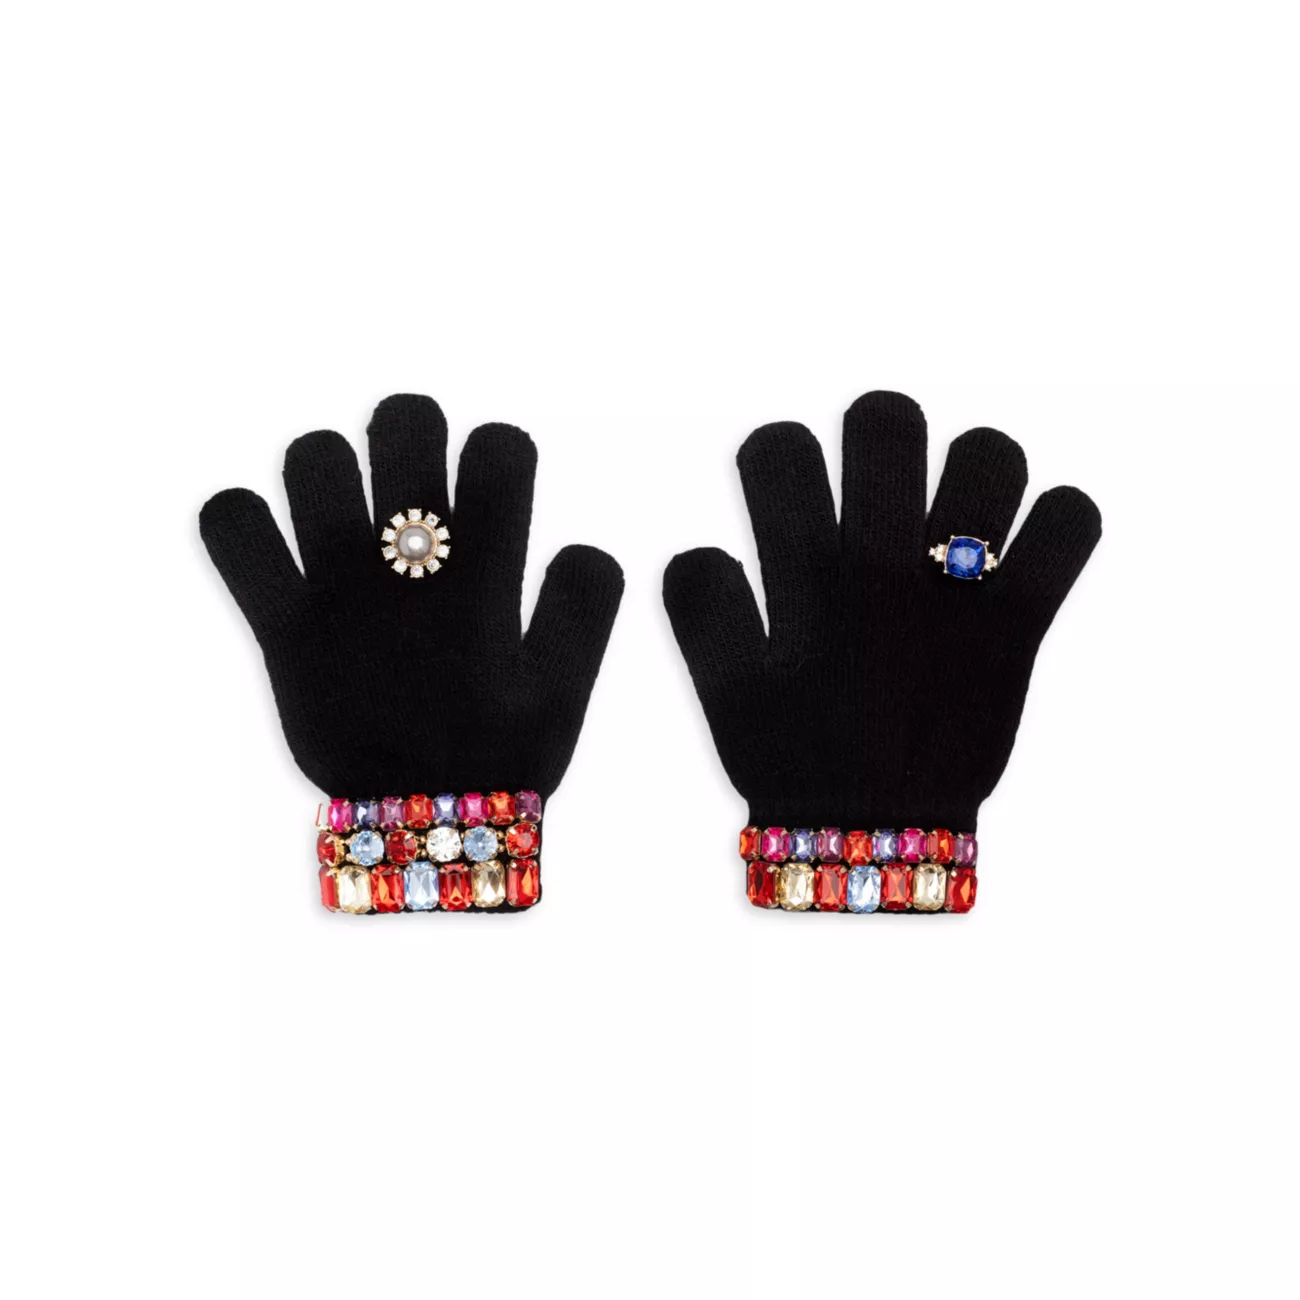 Украшенные перчатки для фигурного катания для девочек Super Smalls